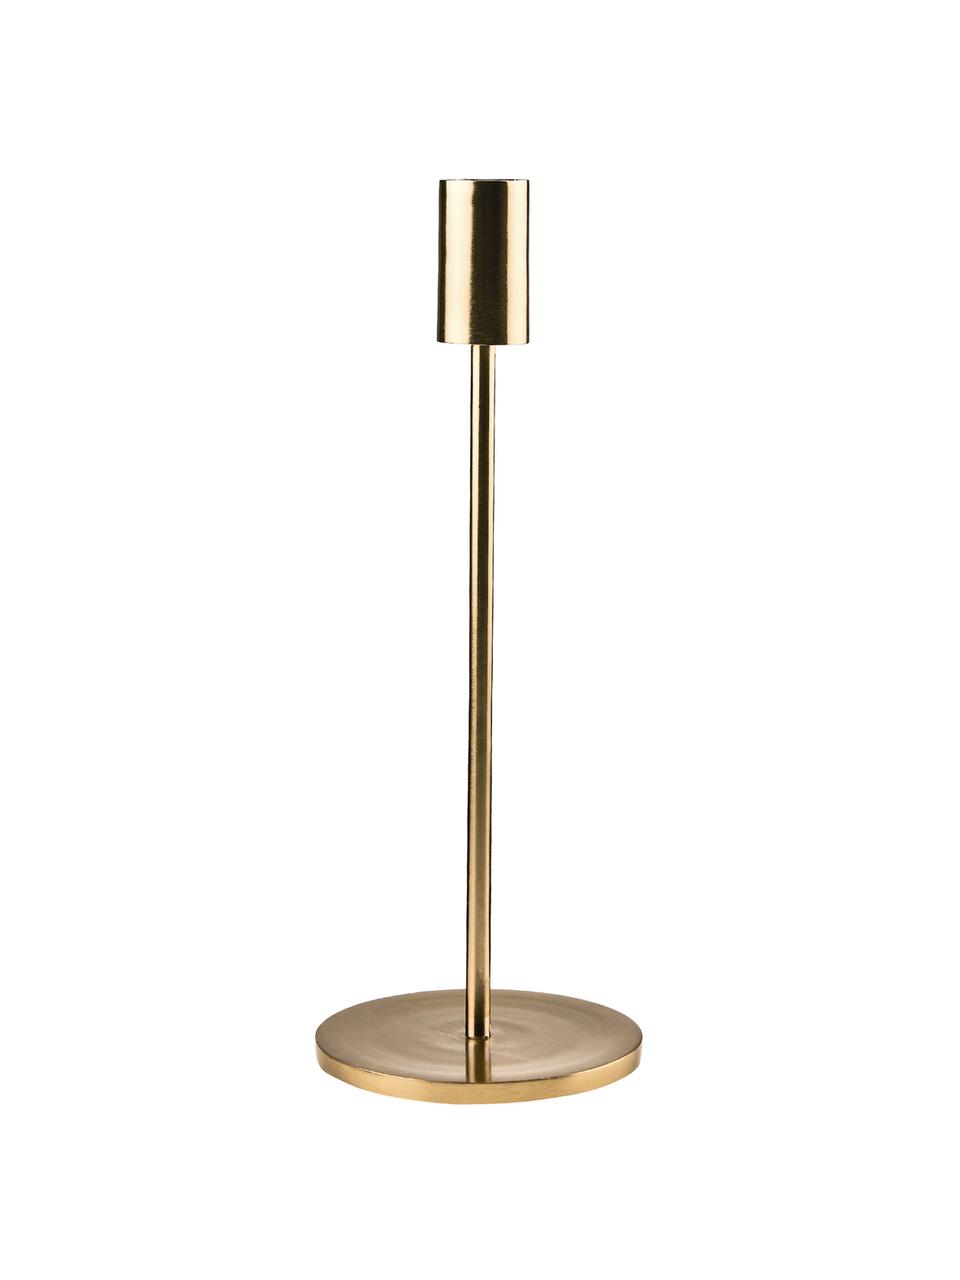 Kerzenhalter Highlight in Gold, Aluminium, beschichtet, Messingfarben, Ø 11 x H 29 cm